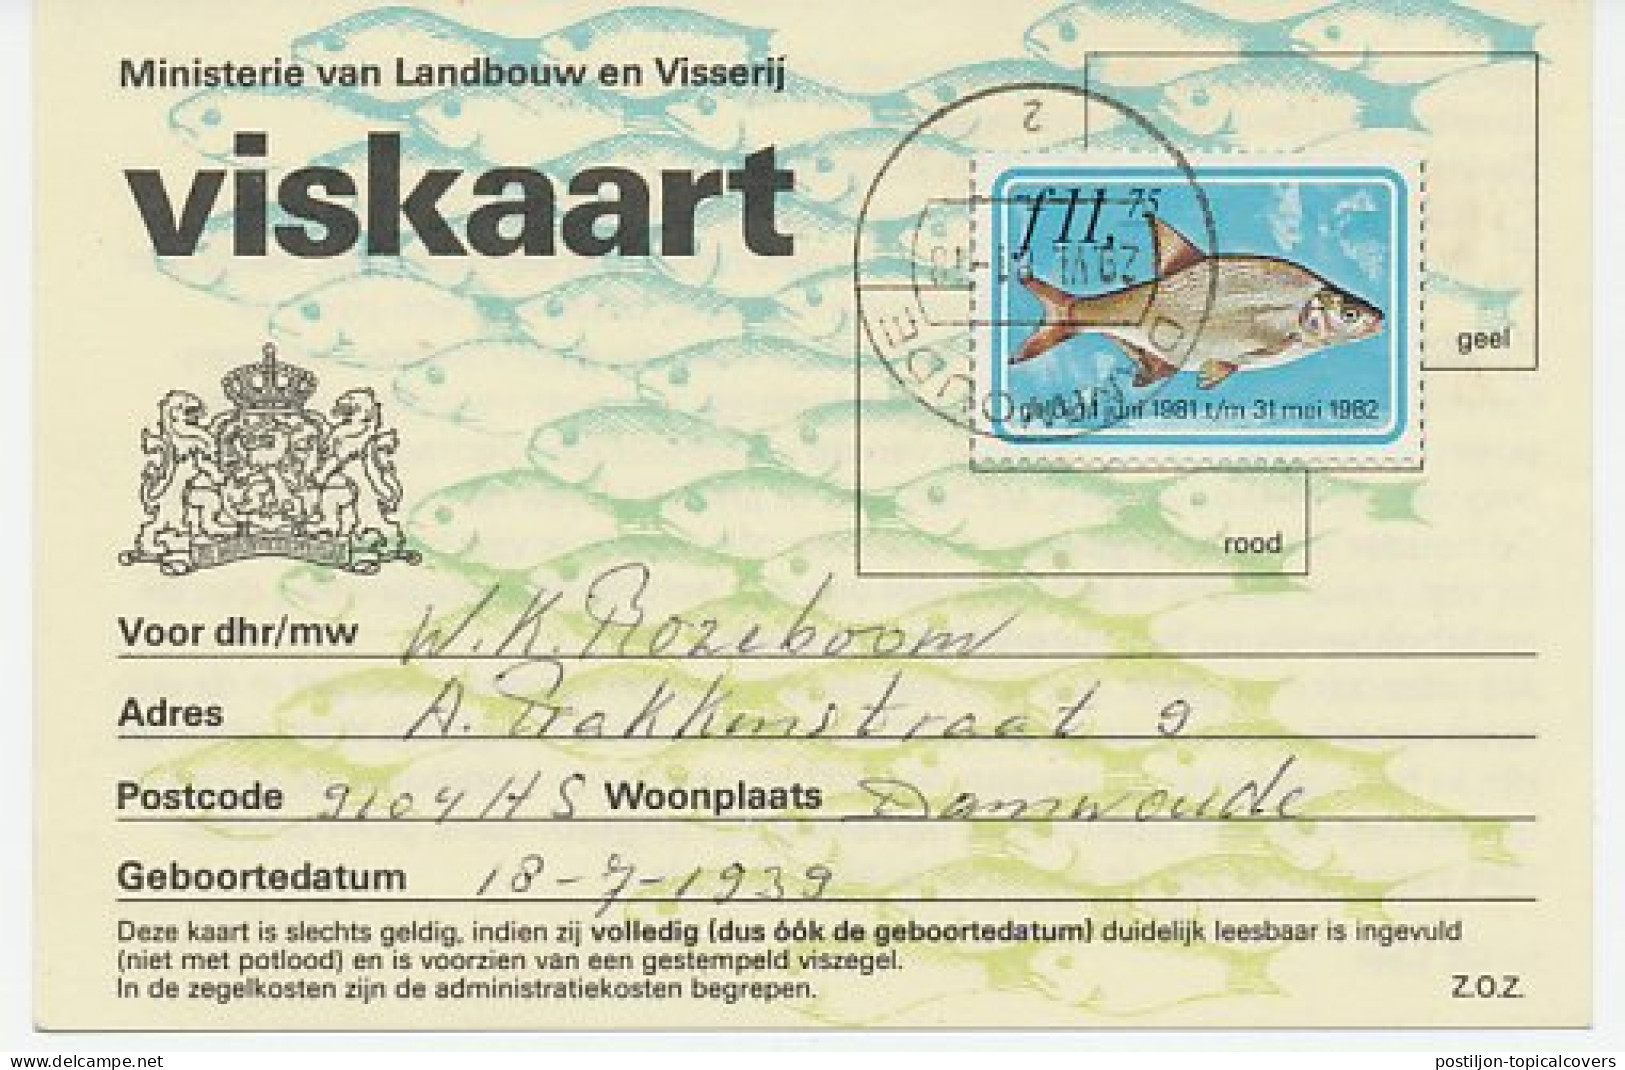 Viskaart Kleine Visakte 1981 / 1982 - Fiscale Zegels